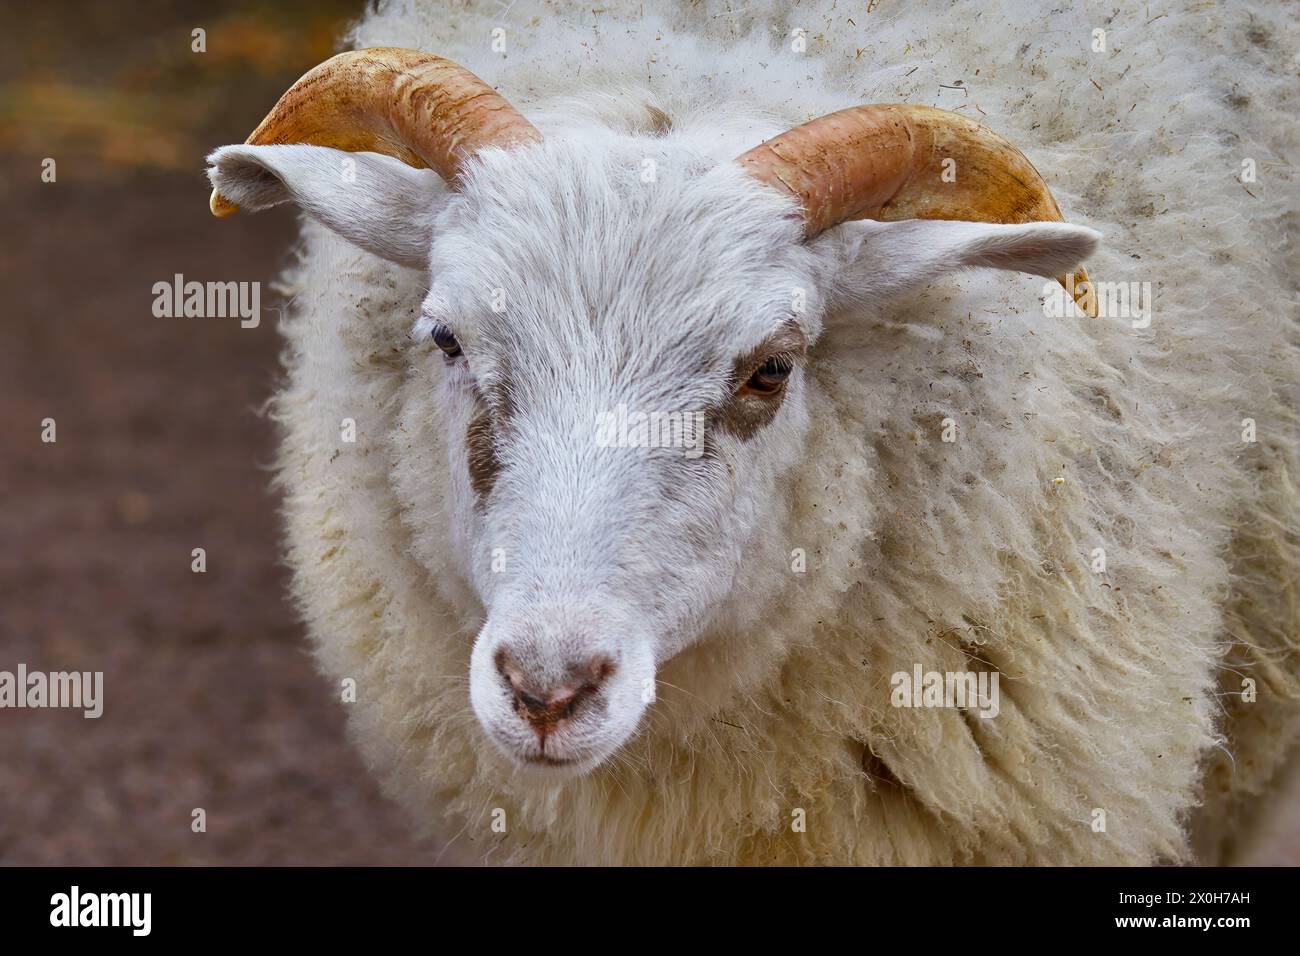 Immagine ritratto di una pecora con corna bianca di un animale domestico Foto Stock